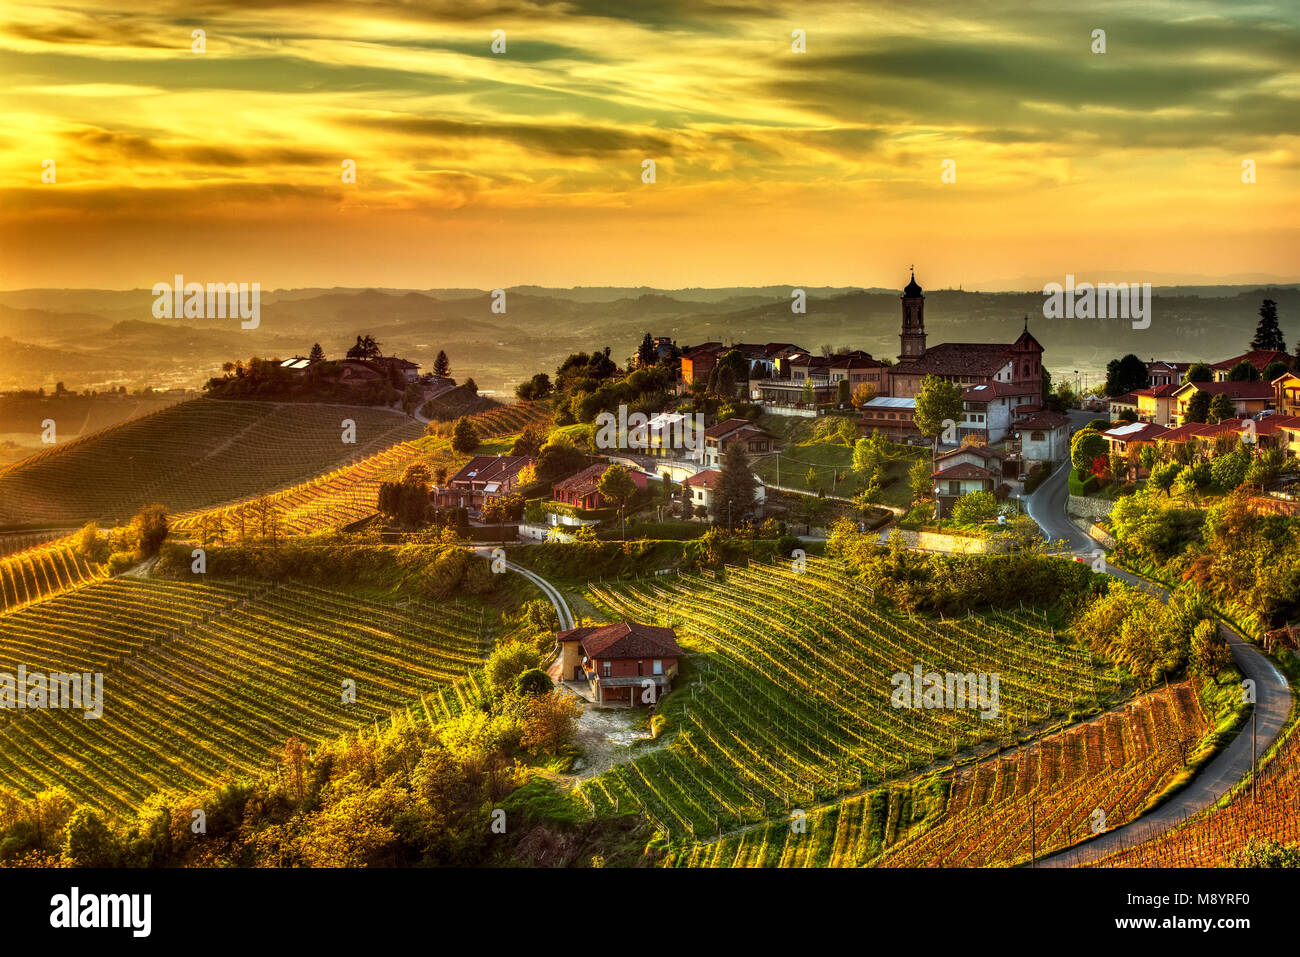 La terra dei vini - Treiso il paese di Treiso, nelle Langhe (Piemonte, Italia), la limitata zona di produzione del prestigioso vino Barbaresco. Foto Stock